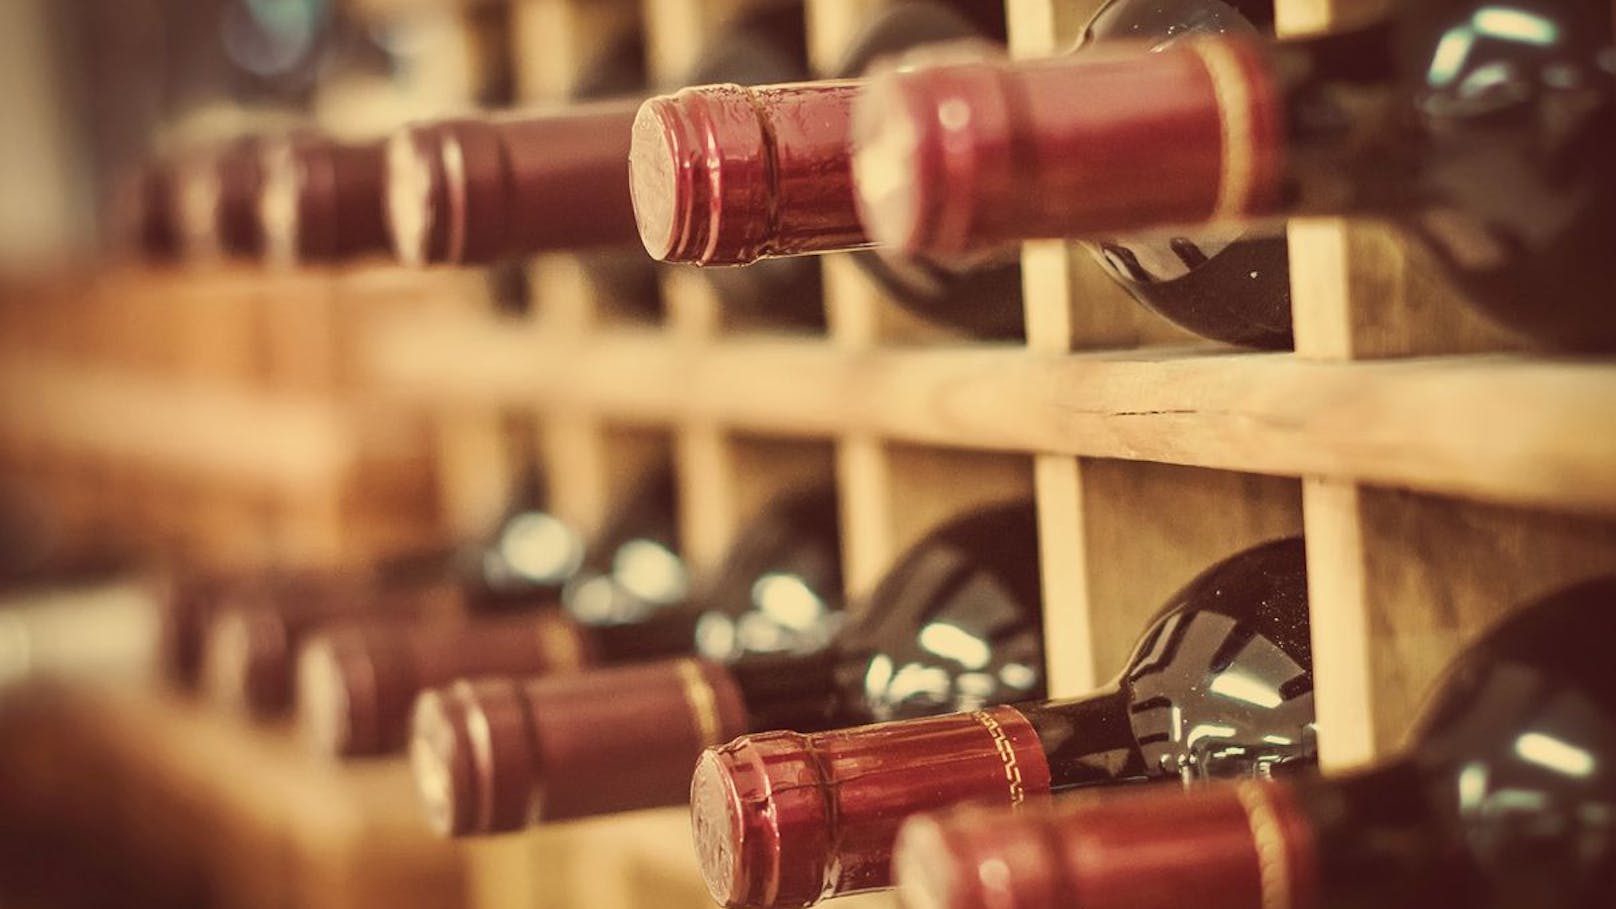 Wein-Diebstahl in Millionenhöhe nach 2 Jahren geklärt